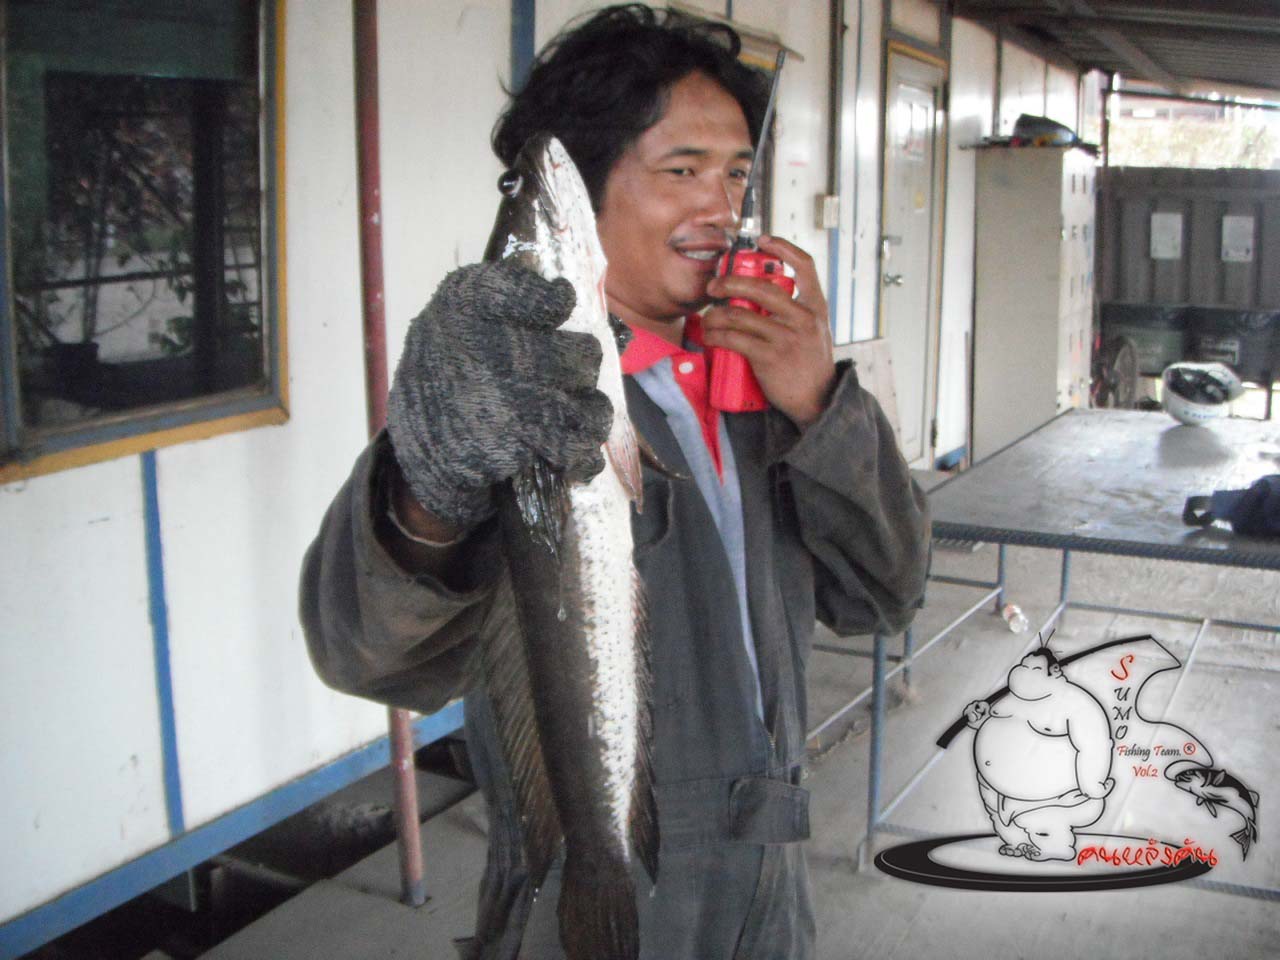 SUMO FISHING TEAM ทำงานด้วยตกปลาด้วยเอาพอแค่ได้กิน